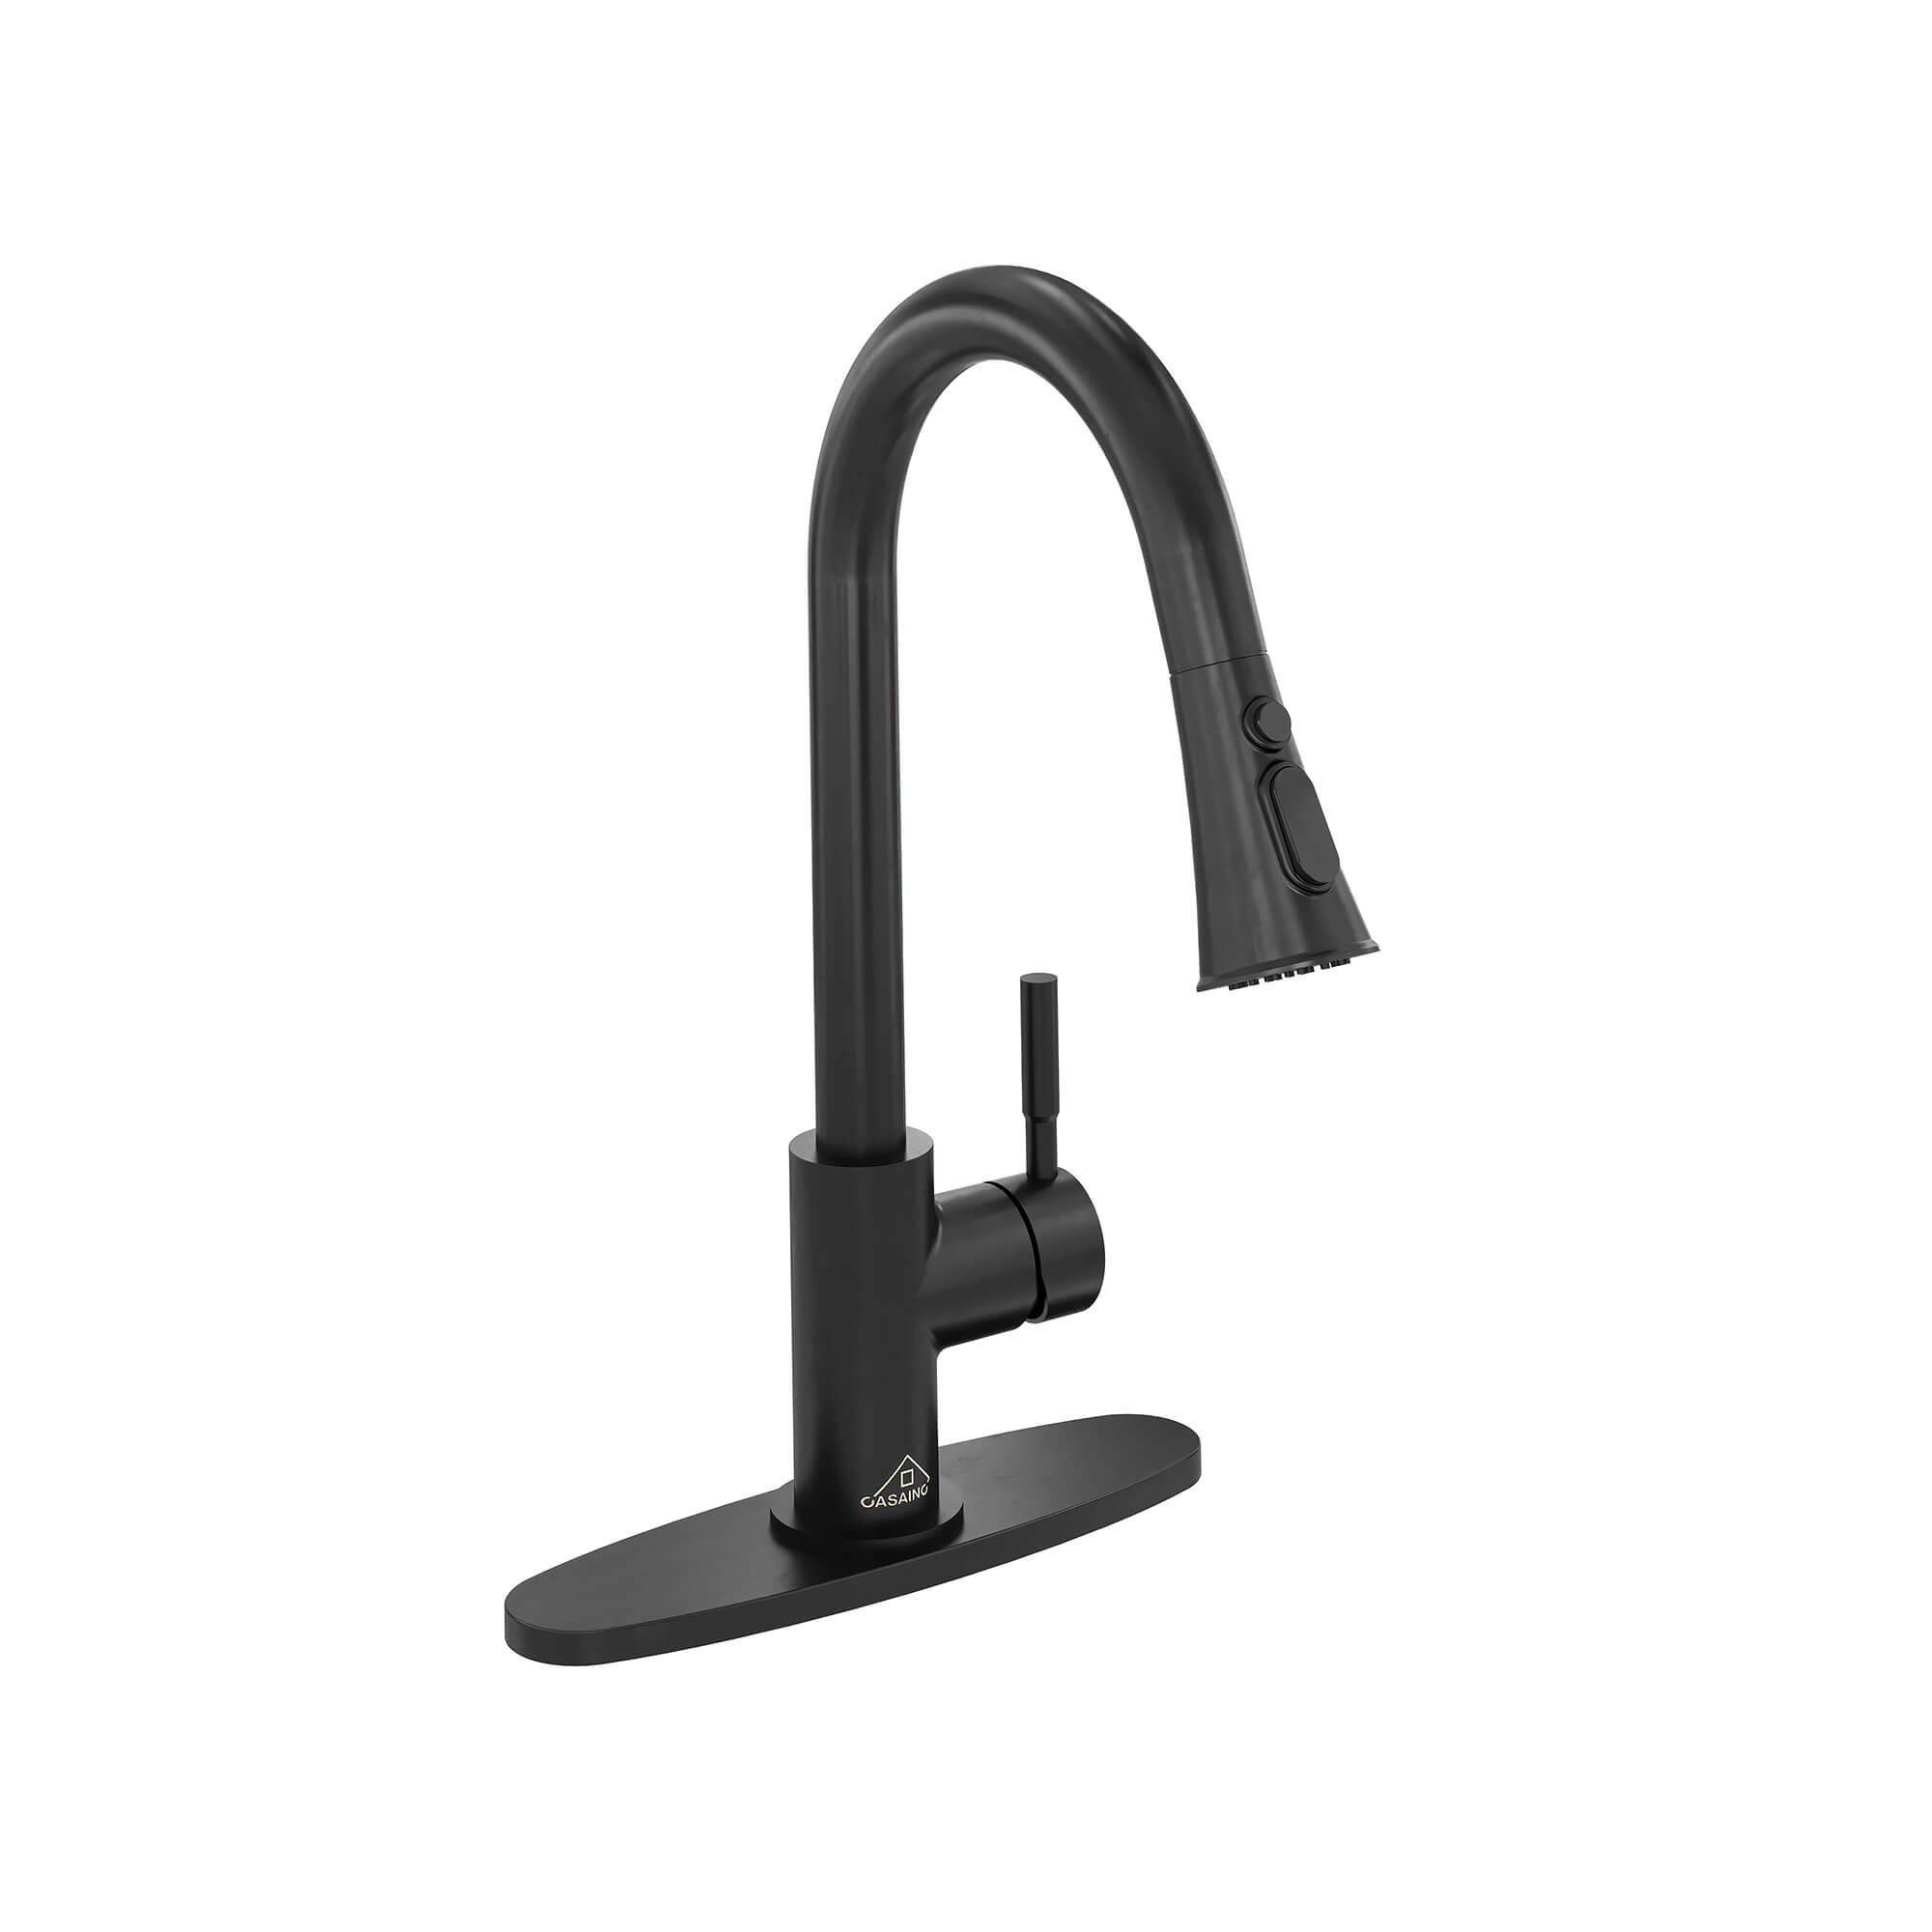 CASAINC 1.8GPM Pull-out Kitchen Faucet in Matte Black/White-CASAINC